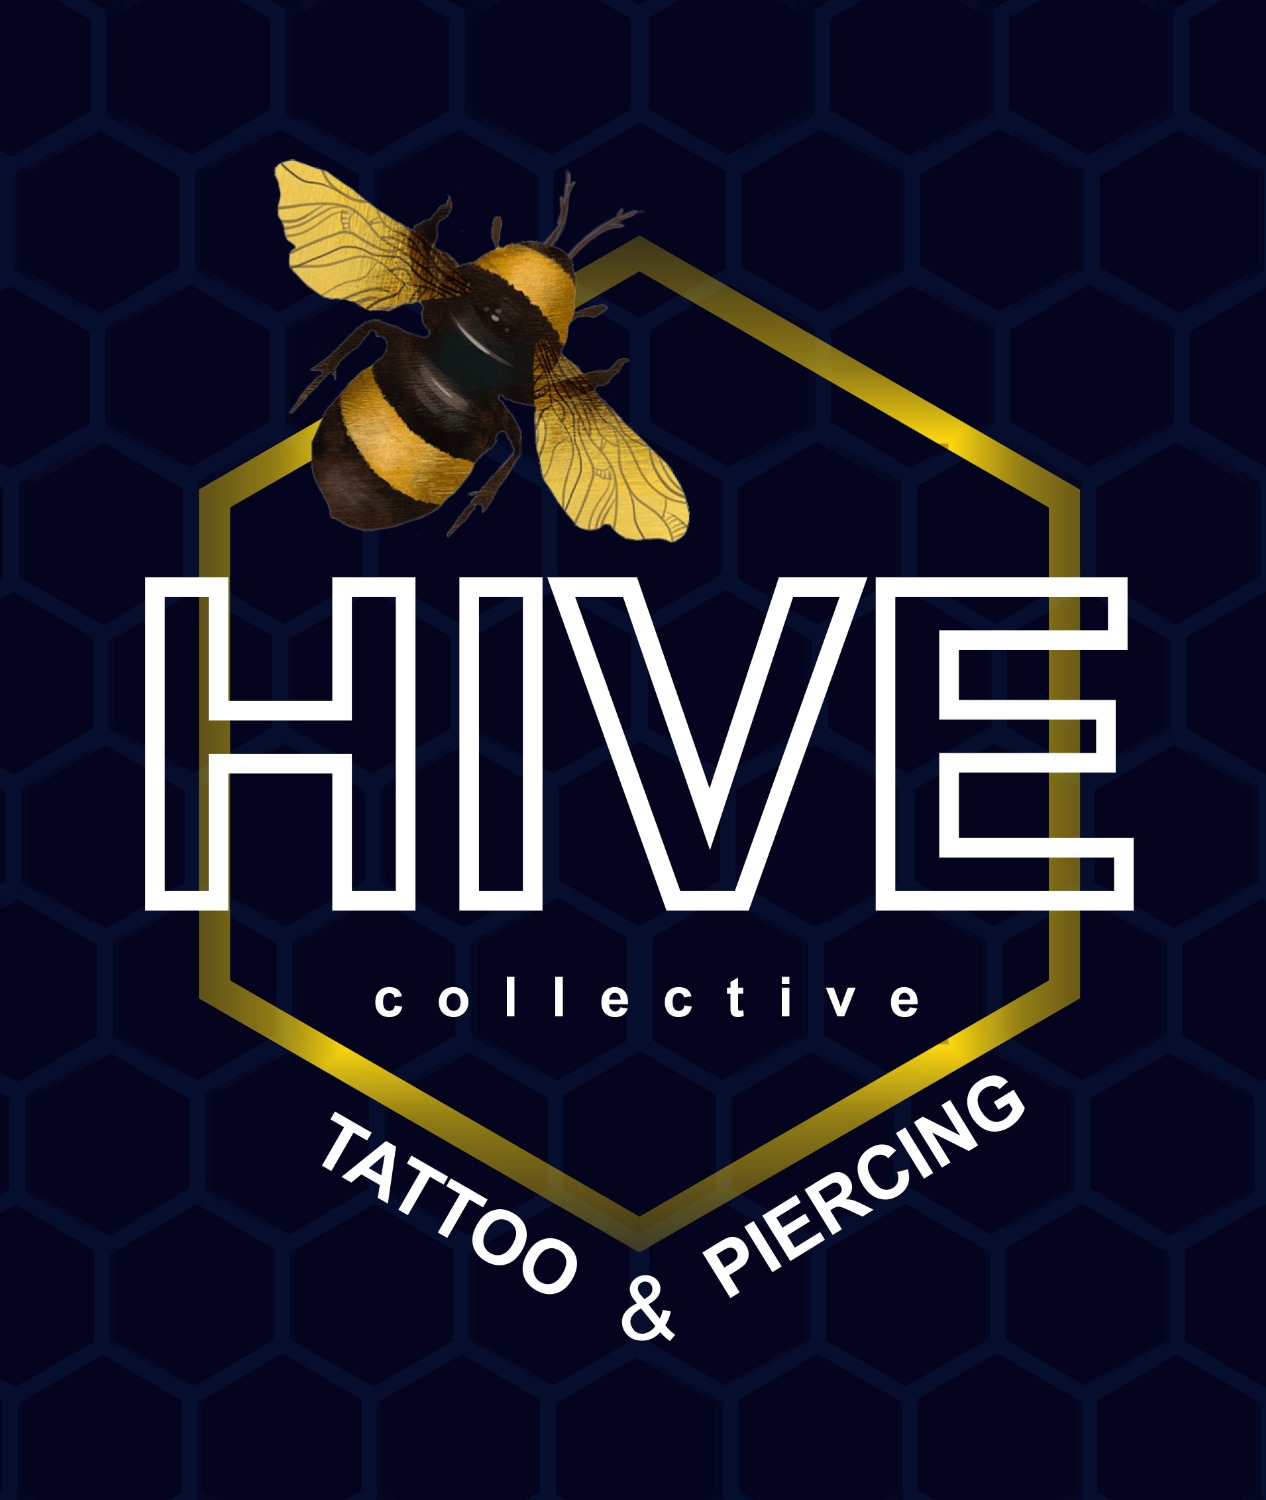 Black Hive Tattoo Studio in Salt Lake City Sector 1Kolkata  Best Tattoo  Parlours in Kolkata  Justdial